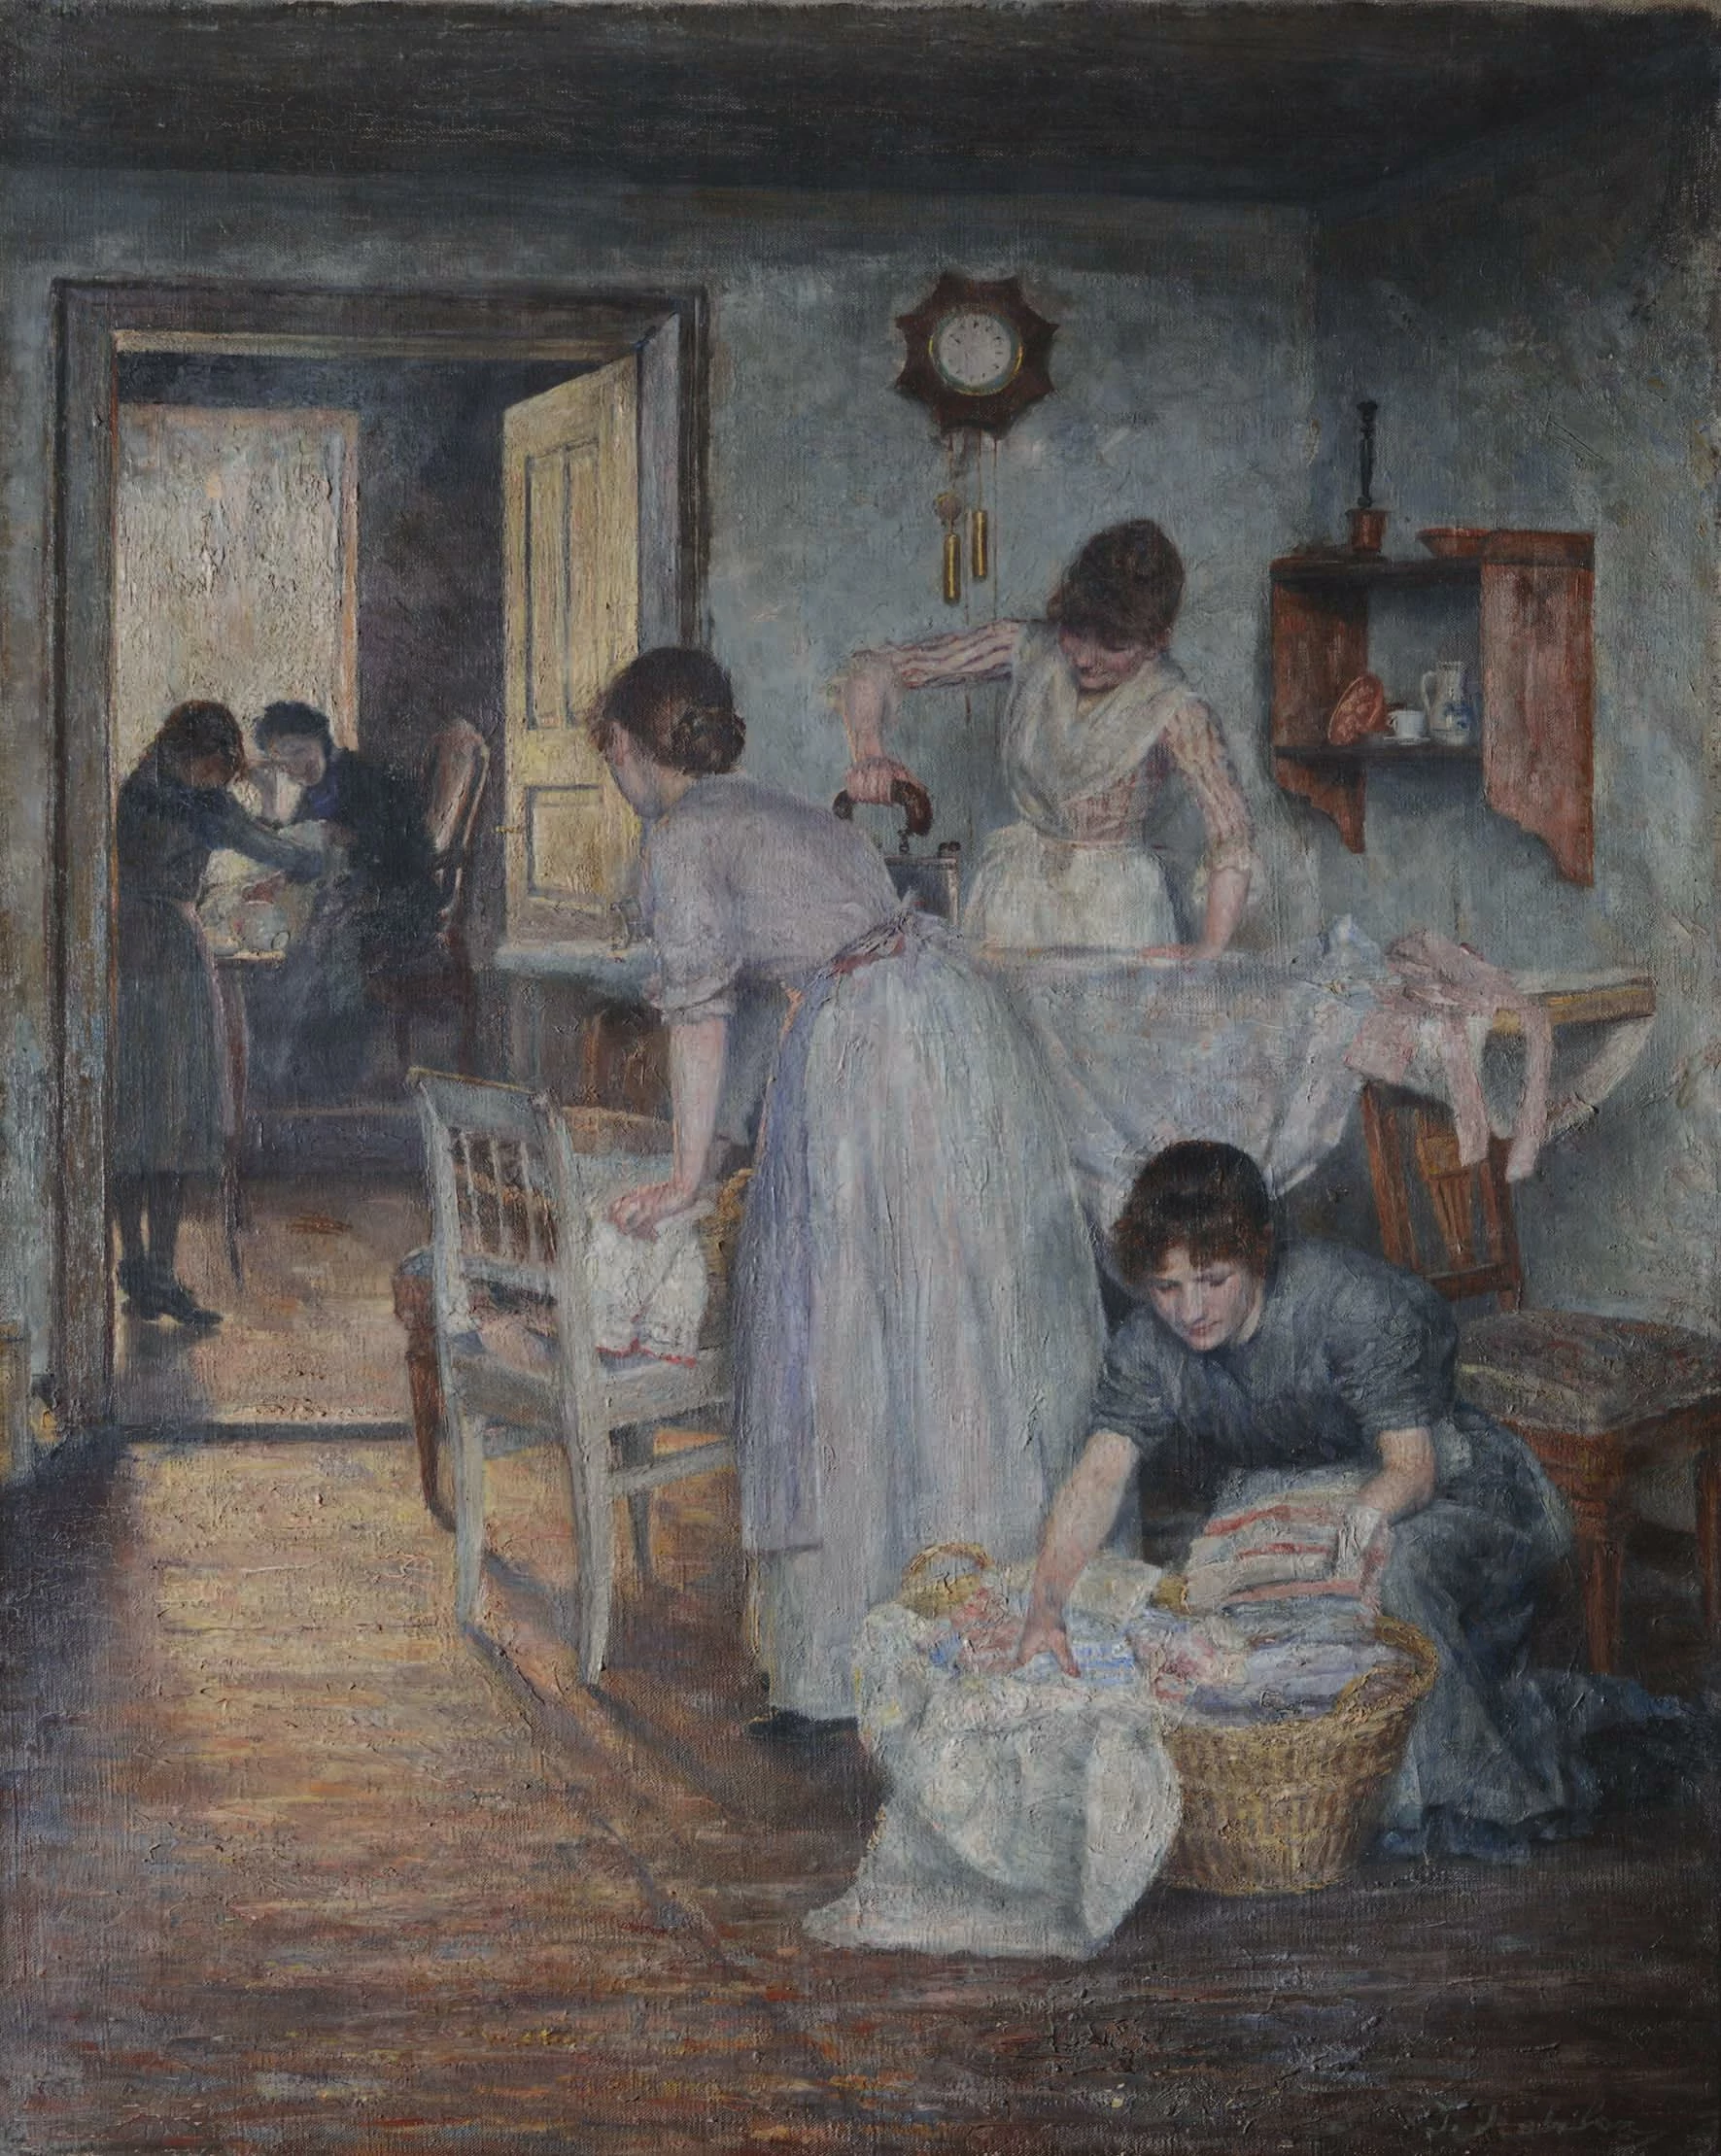 Women Ironing, Ivana Kobilca